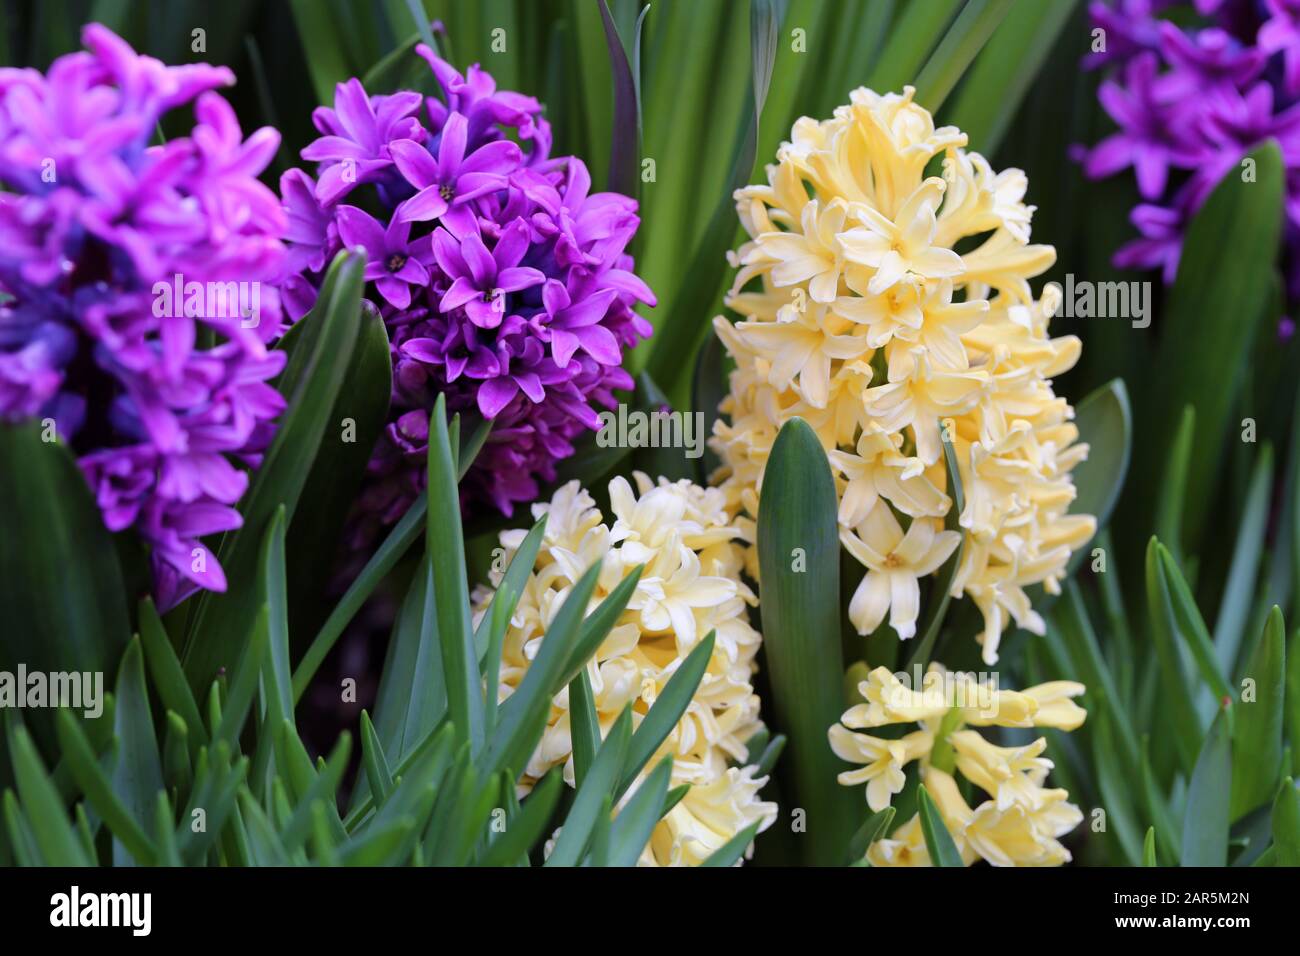 Fiori giacinto giallo e viola in fiore con abbondanza di foglie verdi. Bei fiori di inizio primavera usati per celebrare la Pasqua. Immagine a colori di primo piano. Foto Stock